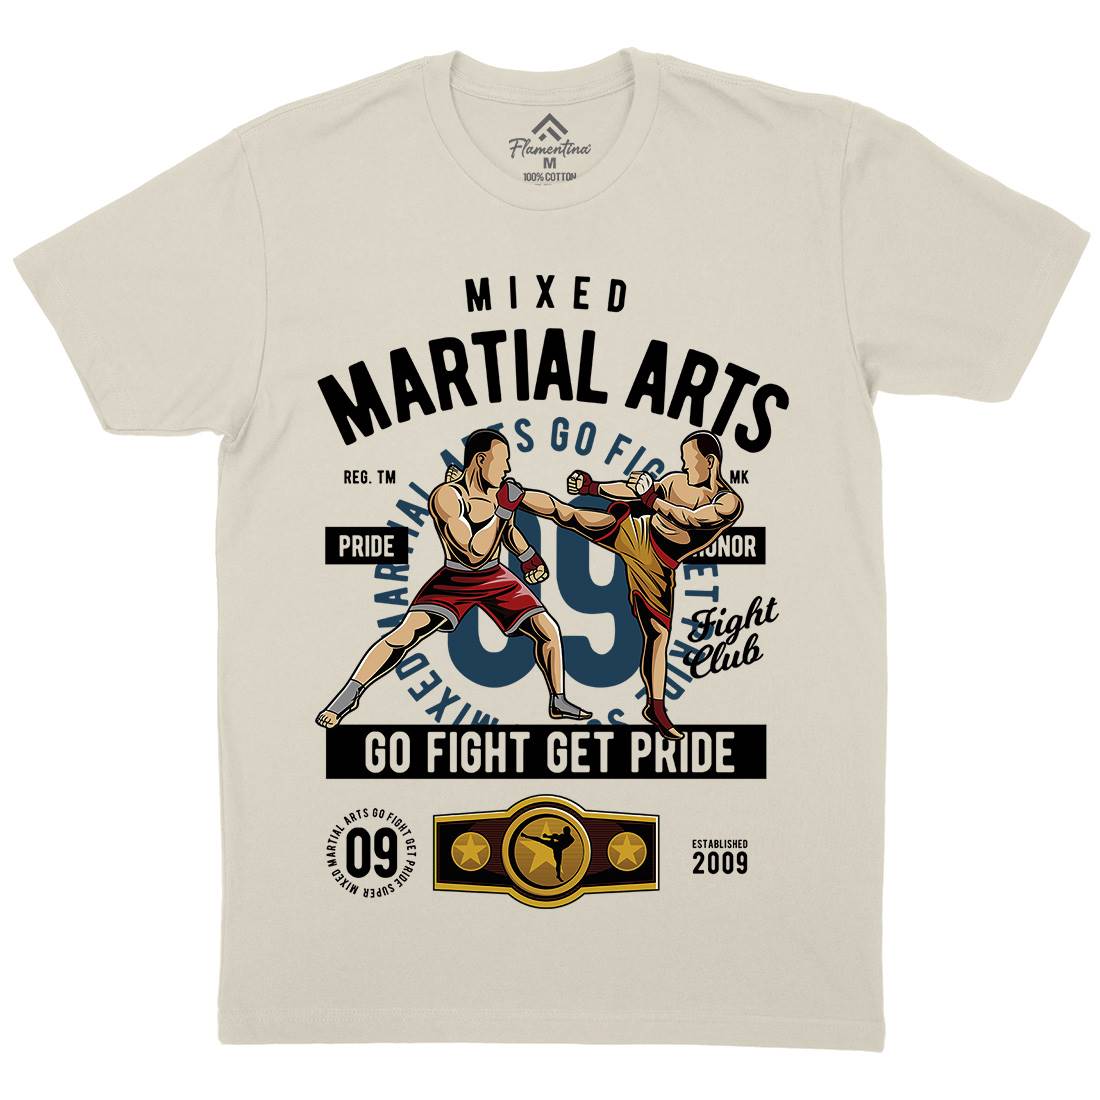 Mixed Martial Arts Mens Organic Crew Neck T-Shirt Sport C396